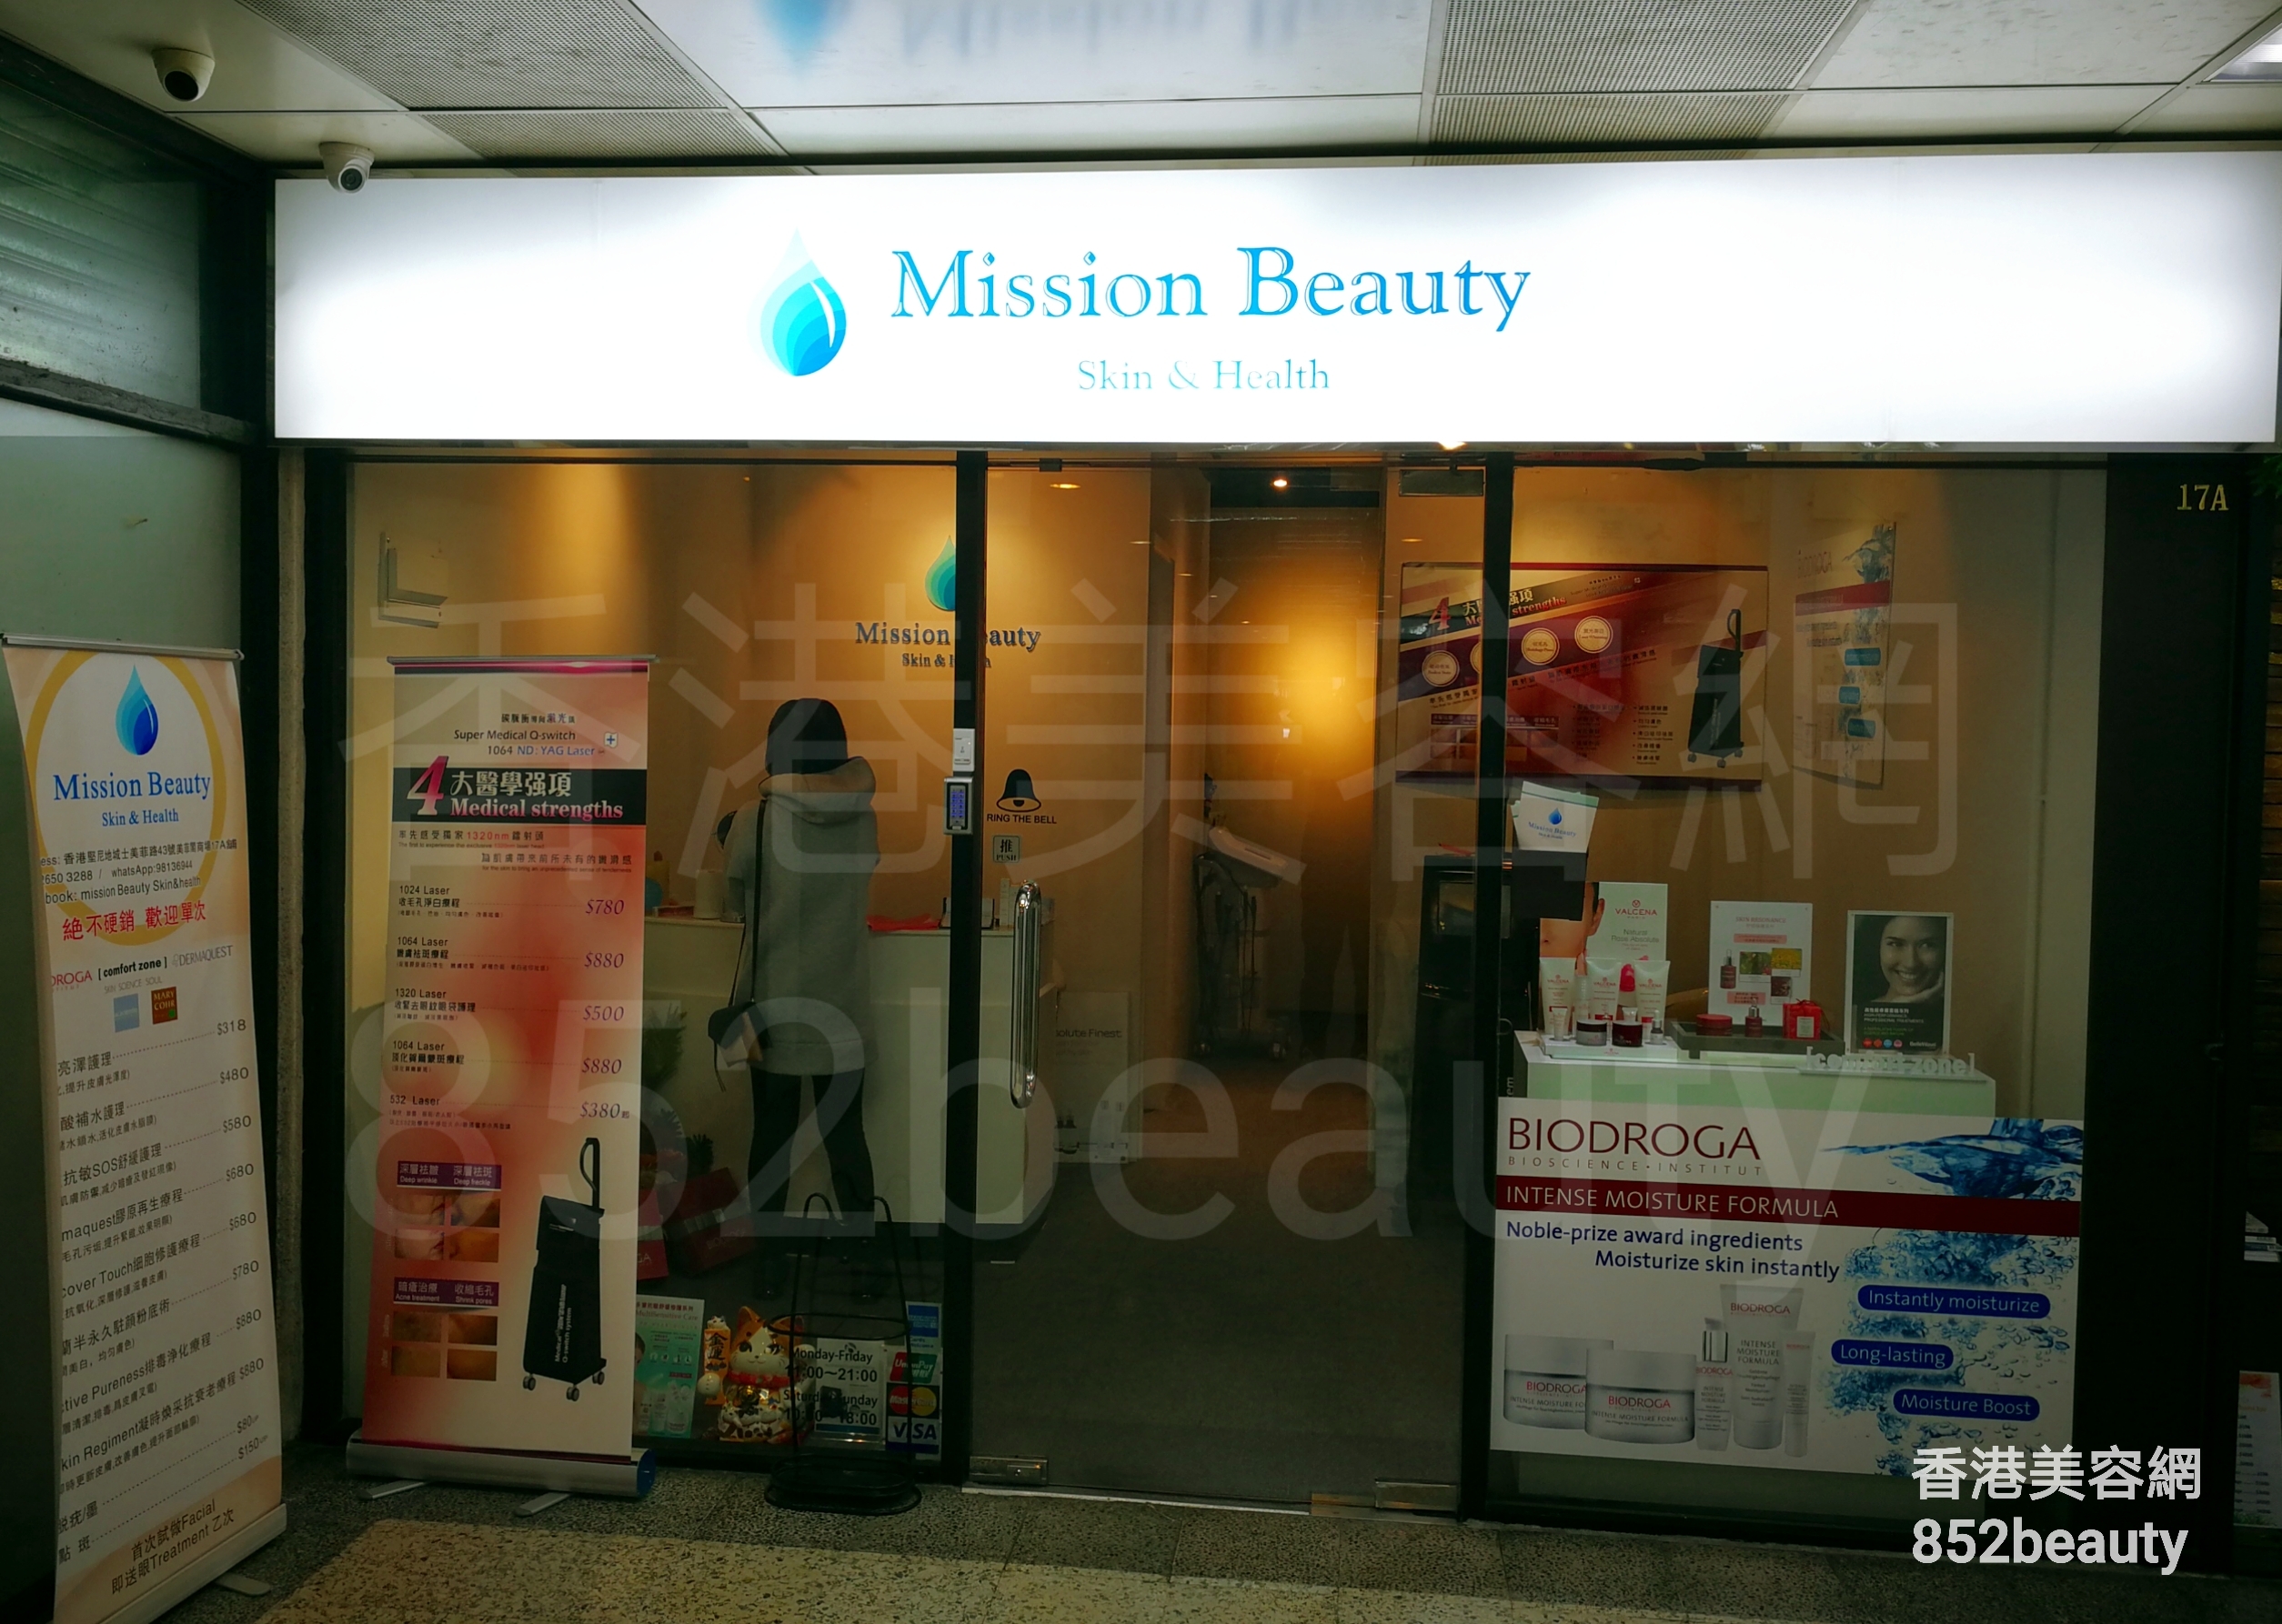 修眉/眼睫毛: Mission Beauty